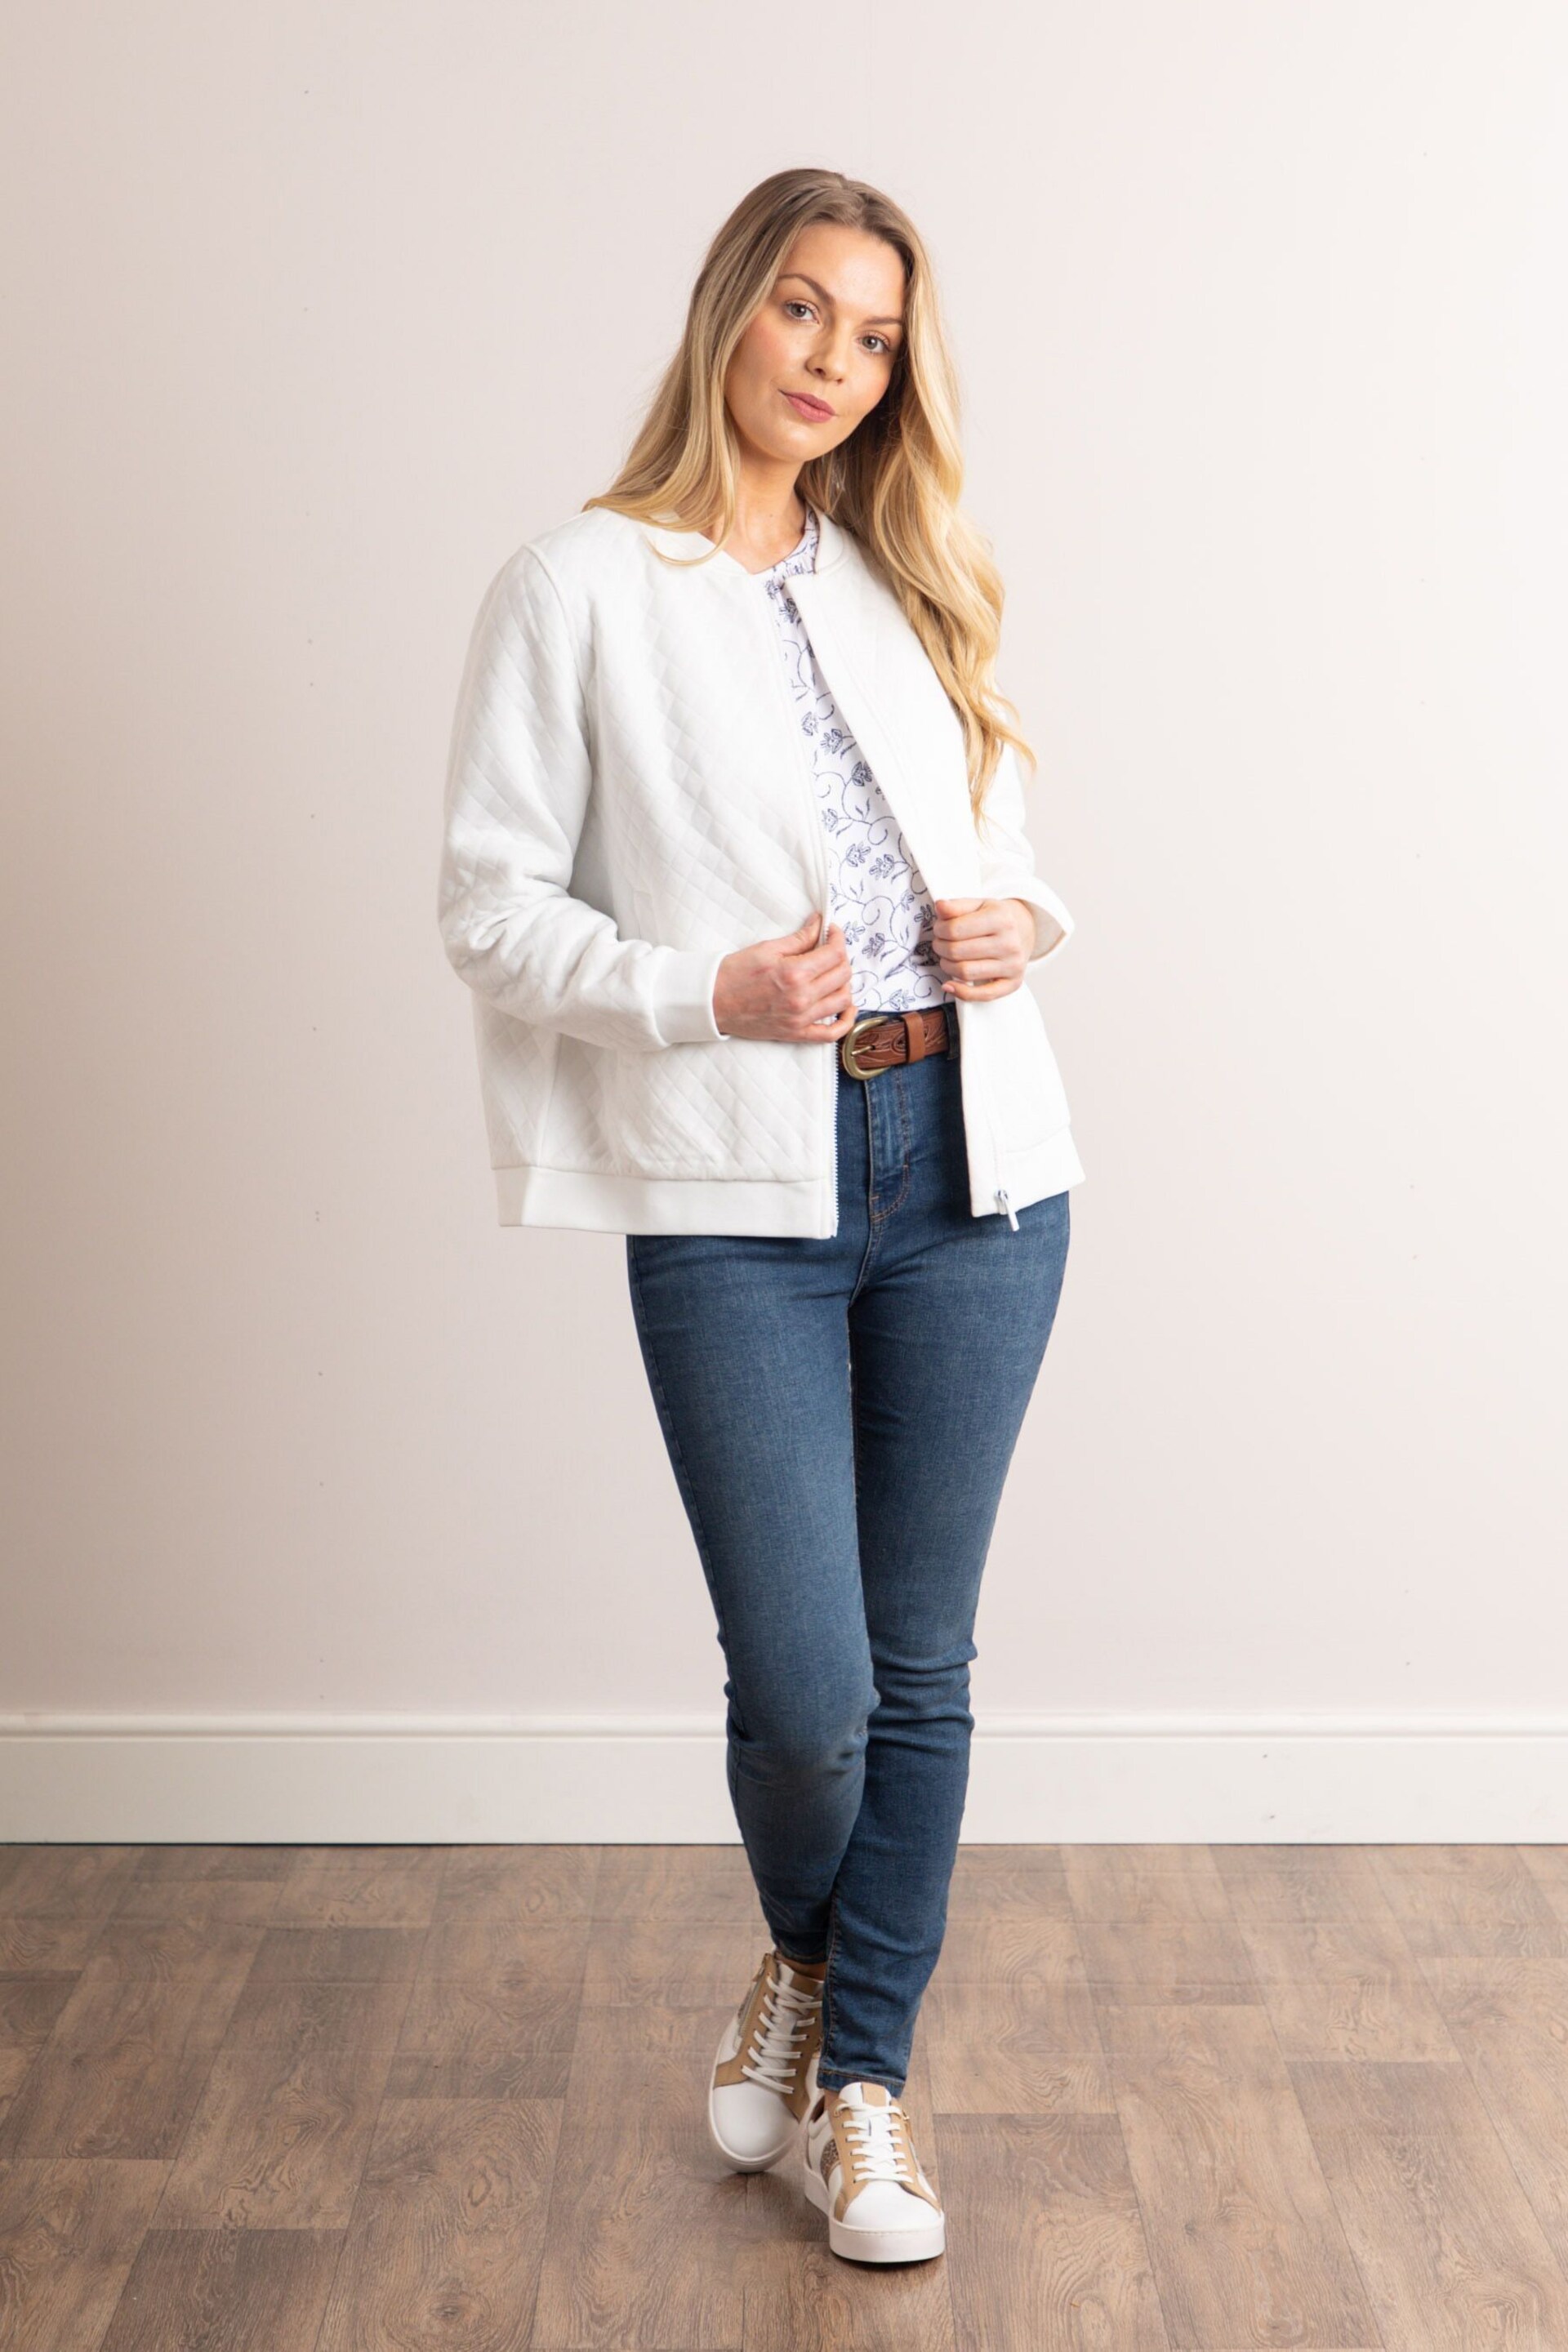 Lakeland Clothing Marissa Jersey Quilted White Bomber Jacket - Image 5 of 8